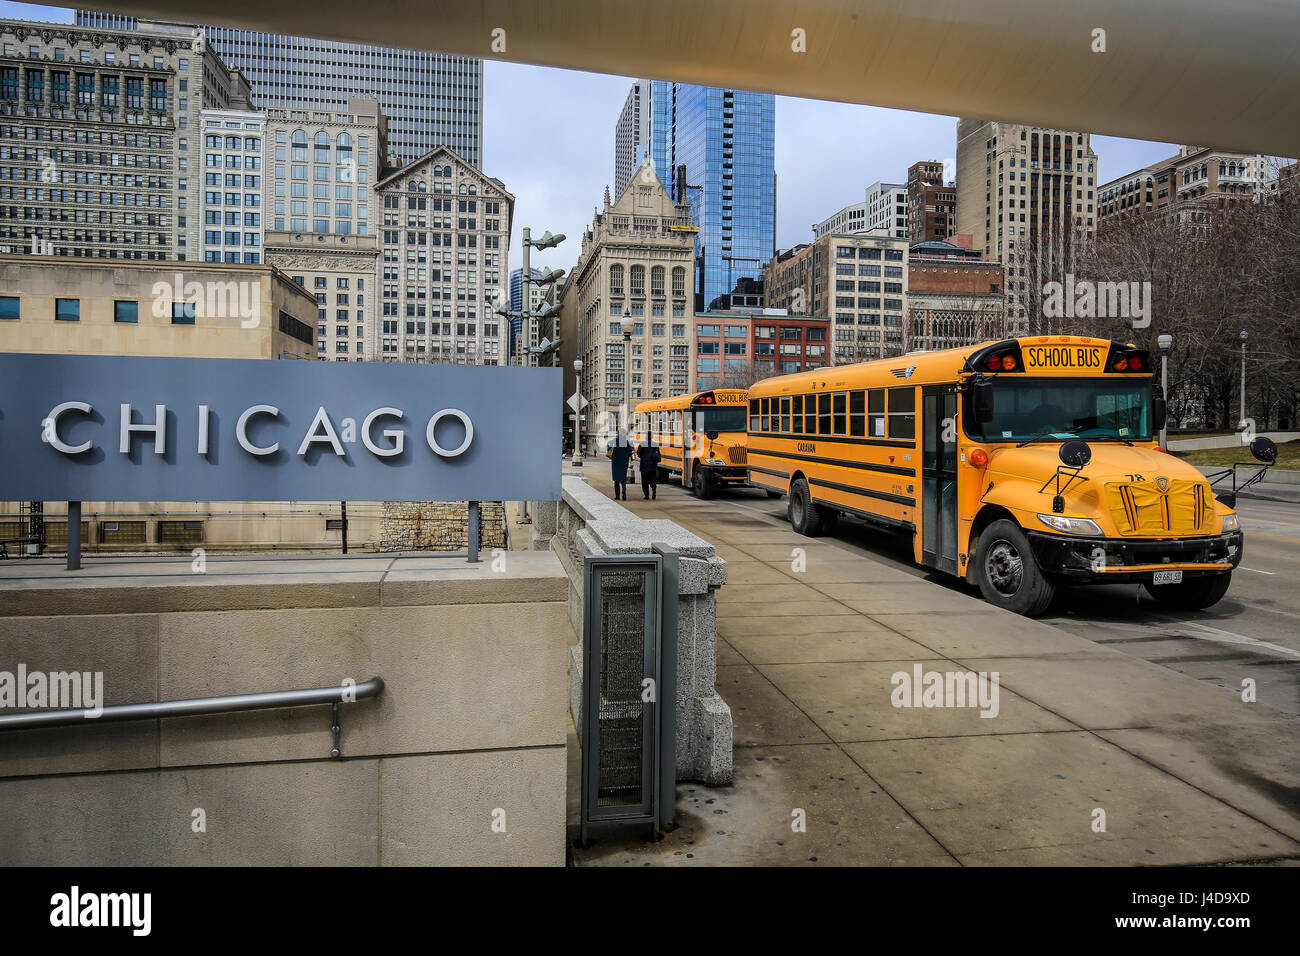 Chicago, scuola bus, scritte, Chicago, Illinois, USA, America del Nord, Schriftzug Chicago und Schulbus, Chicago, Illinois, USA, Nordamerika Foto Stock